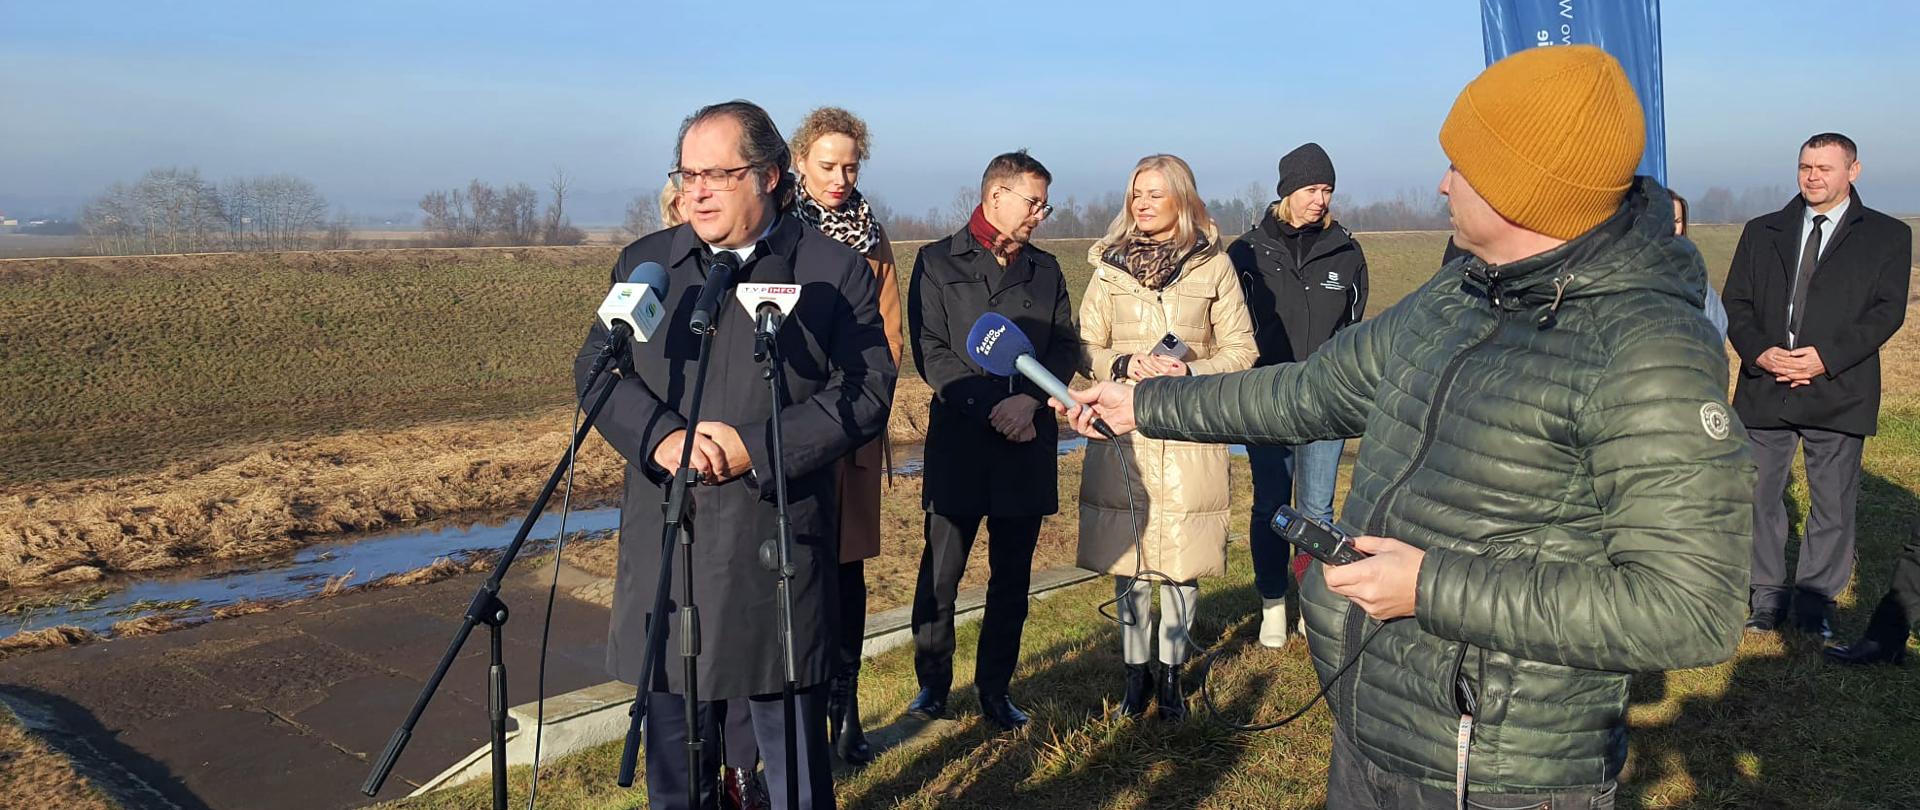 Wiceminister infrastruktury Marek Gróbarczyk w trakcie konferencji prasowej na wale przeciwpowodziowym potoku Uszewka